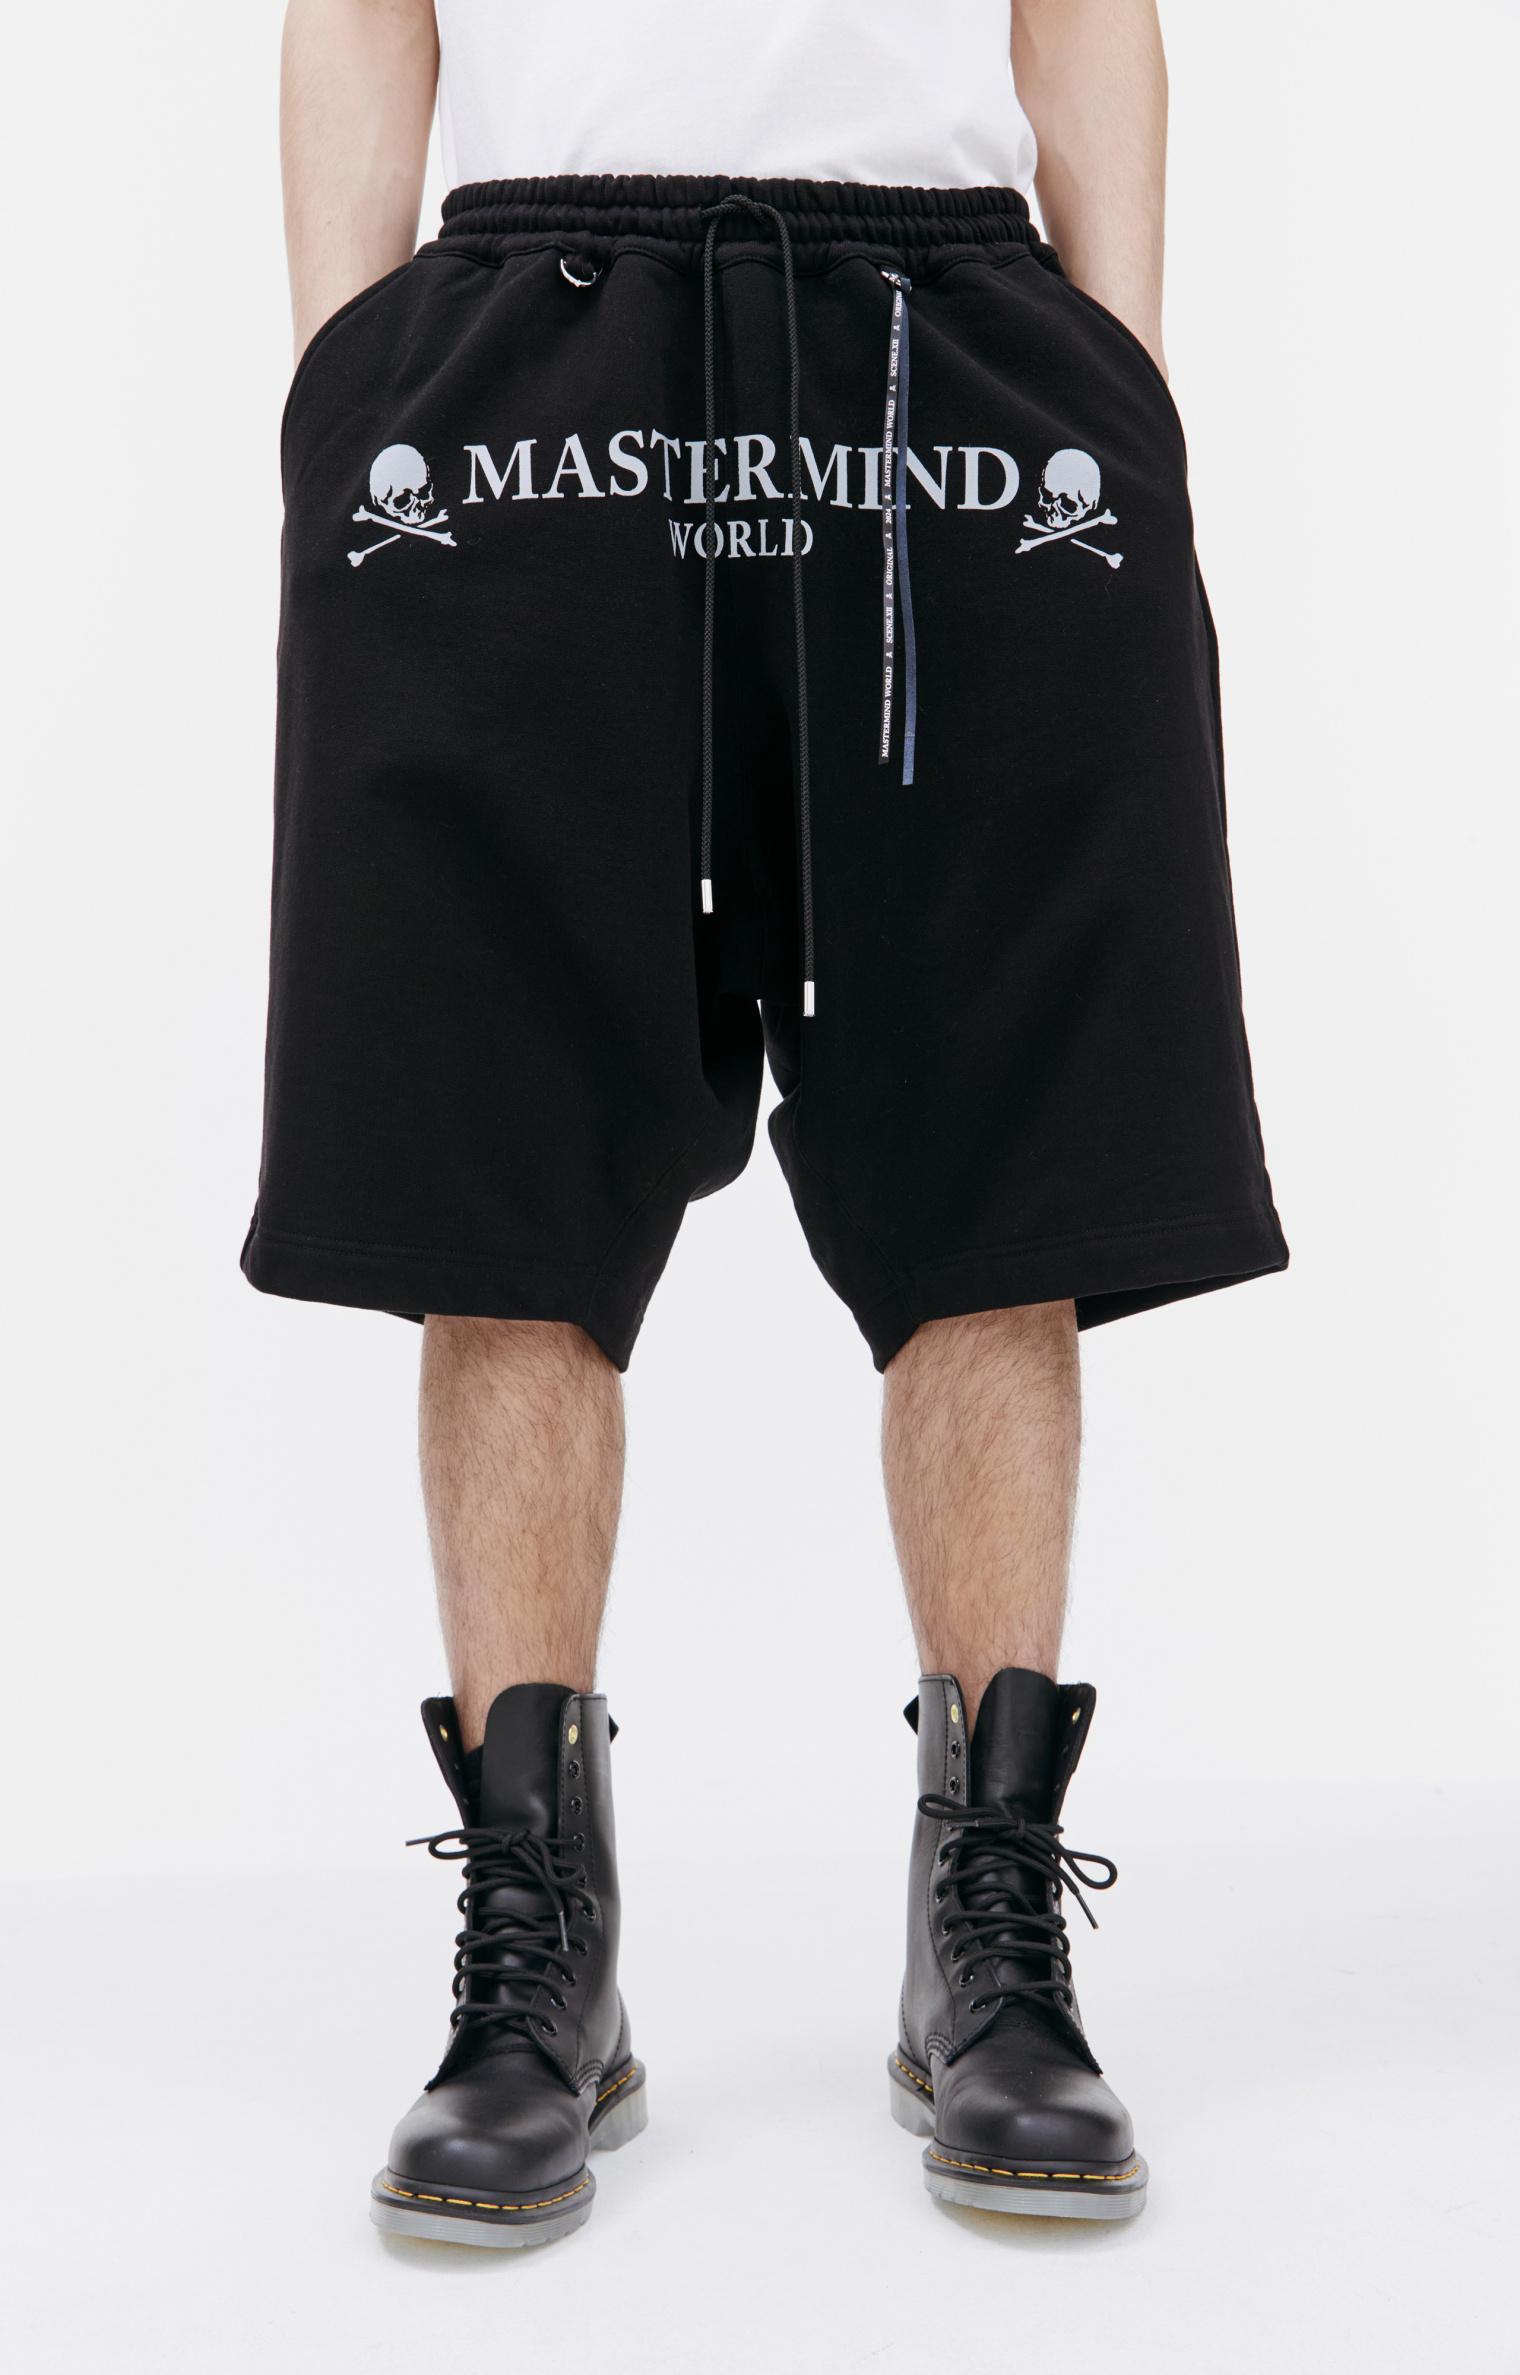 Mastermind WORLD Logo printed shorts